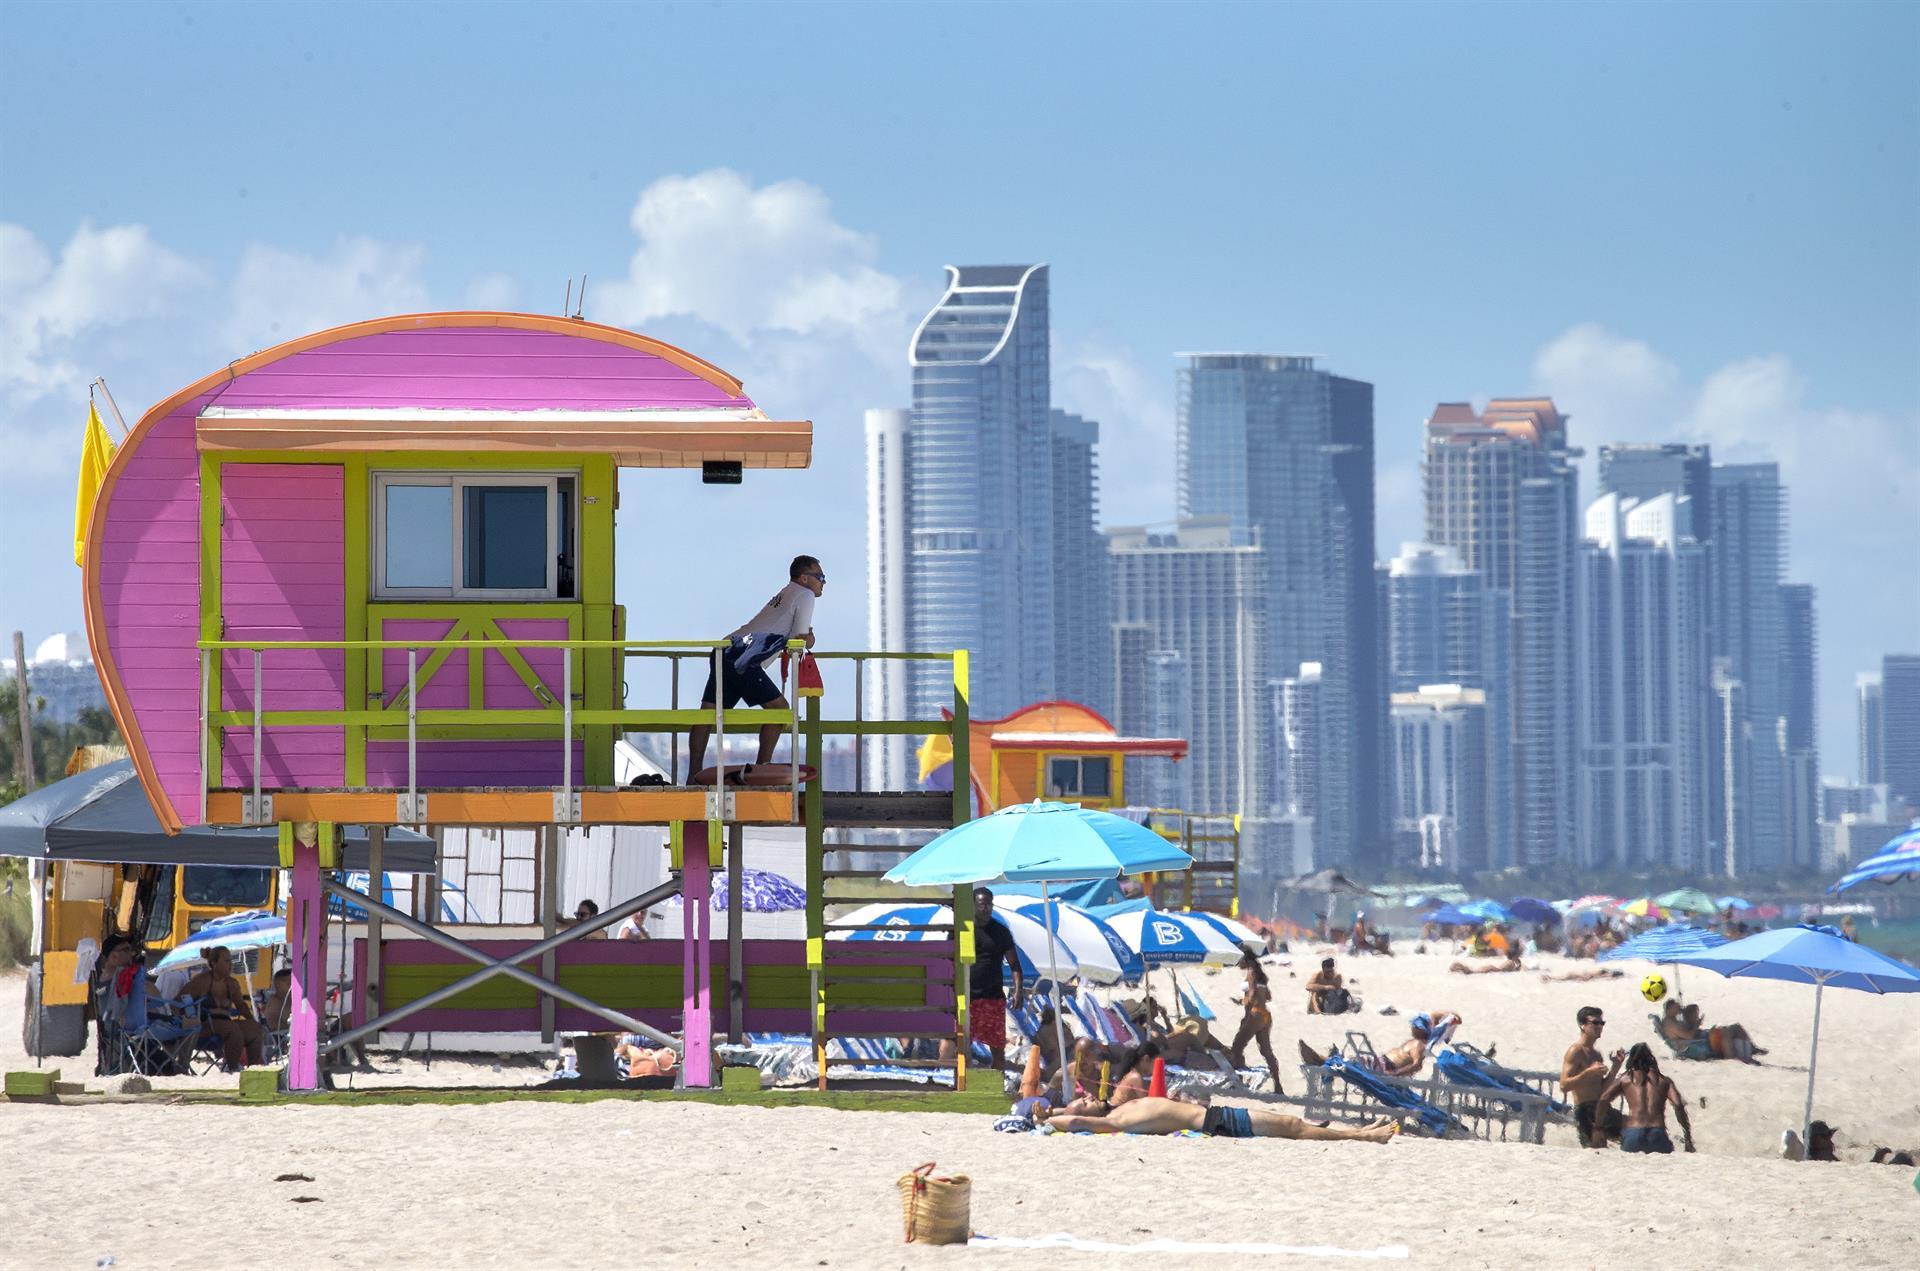 Fotografía que muestra una caseta de socorristas diseñada por el arquitecto William Lane, el 3 de agosto de 2022, en la playa de Miami Beach (Estados Unidos). EFE/ Cristobal Herrera-ulashkevich
